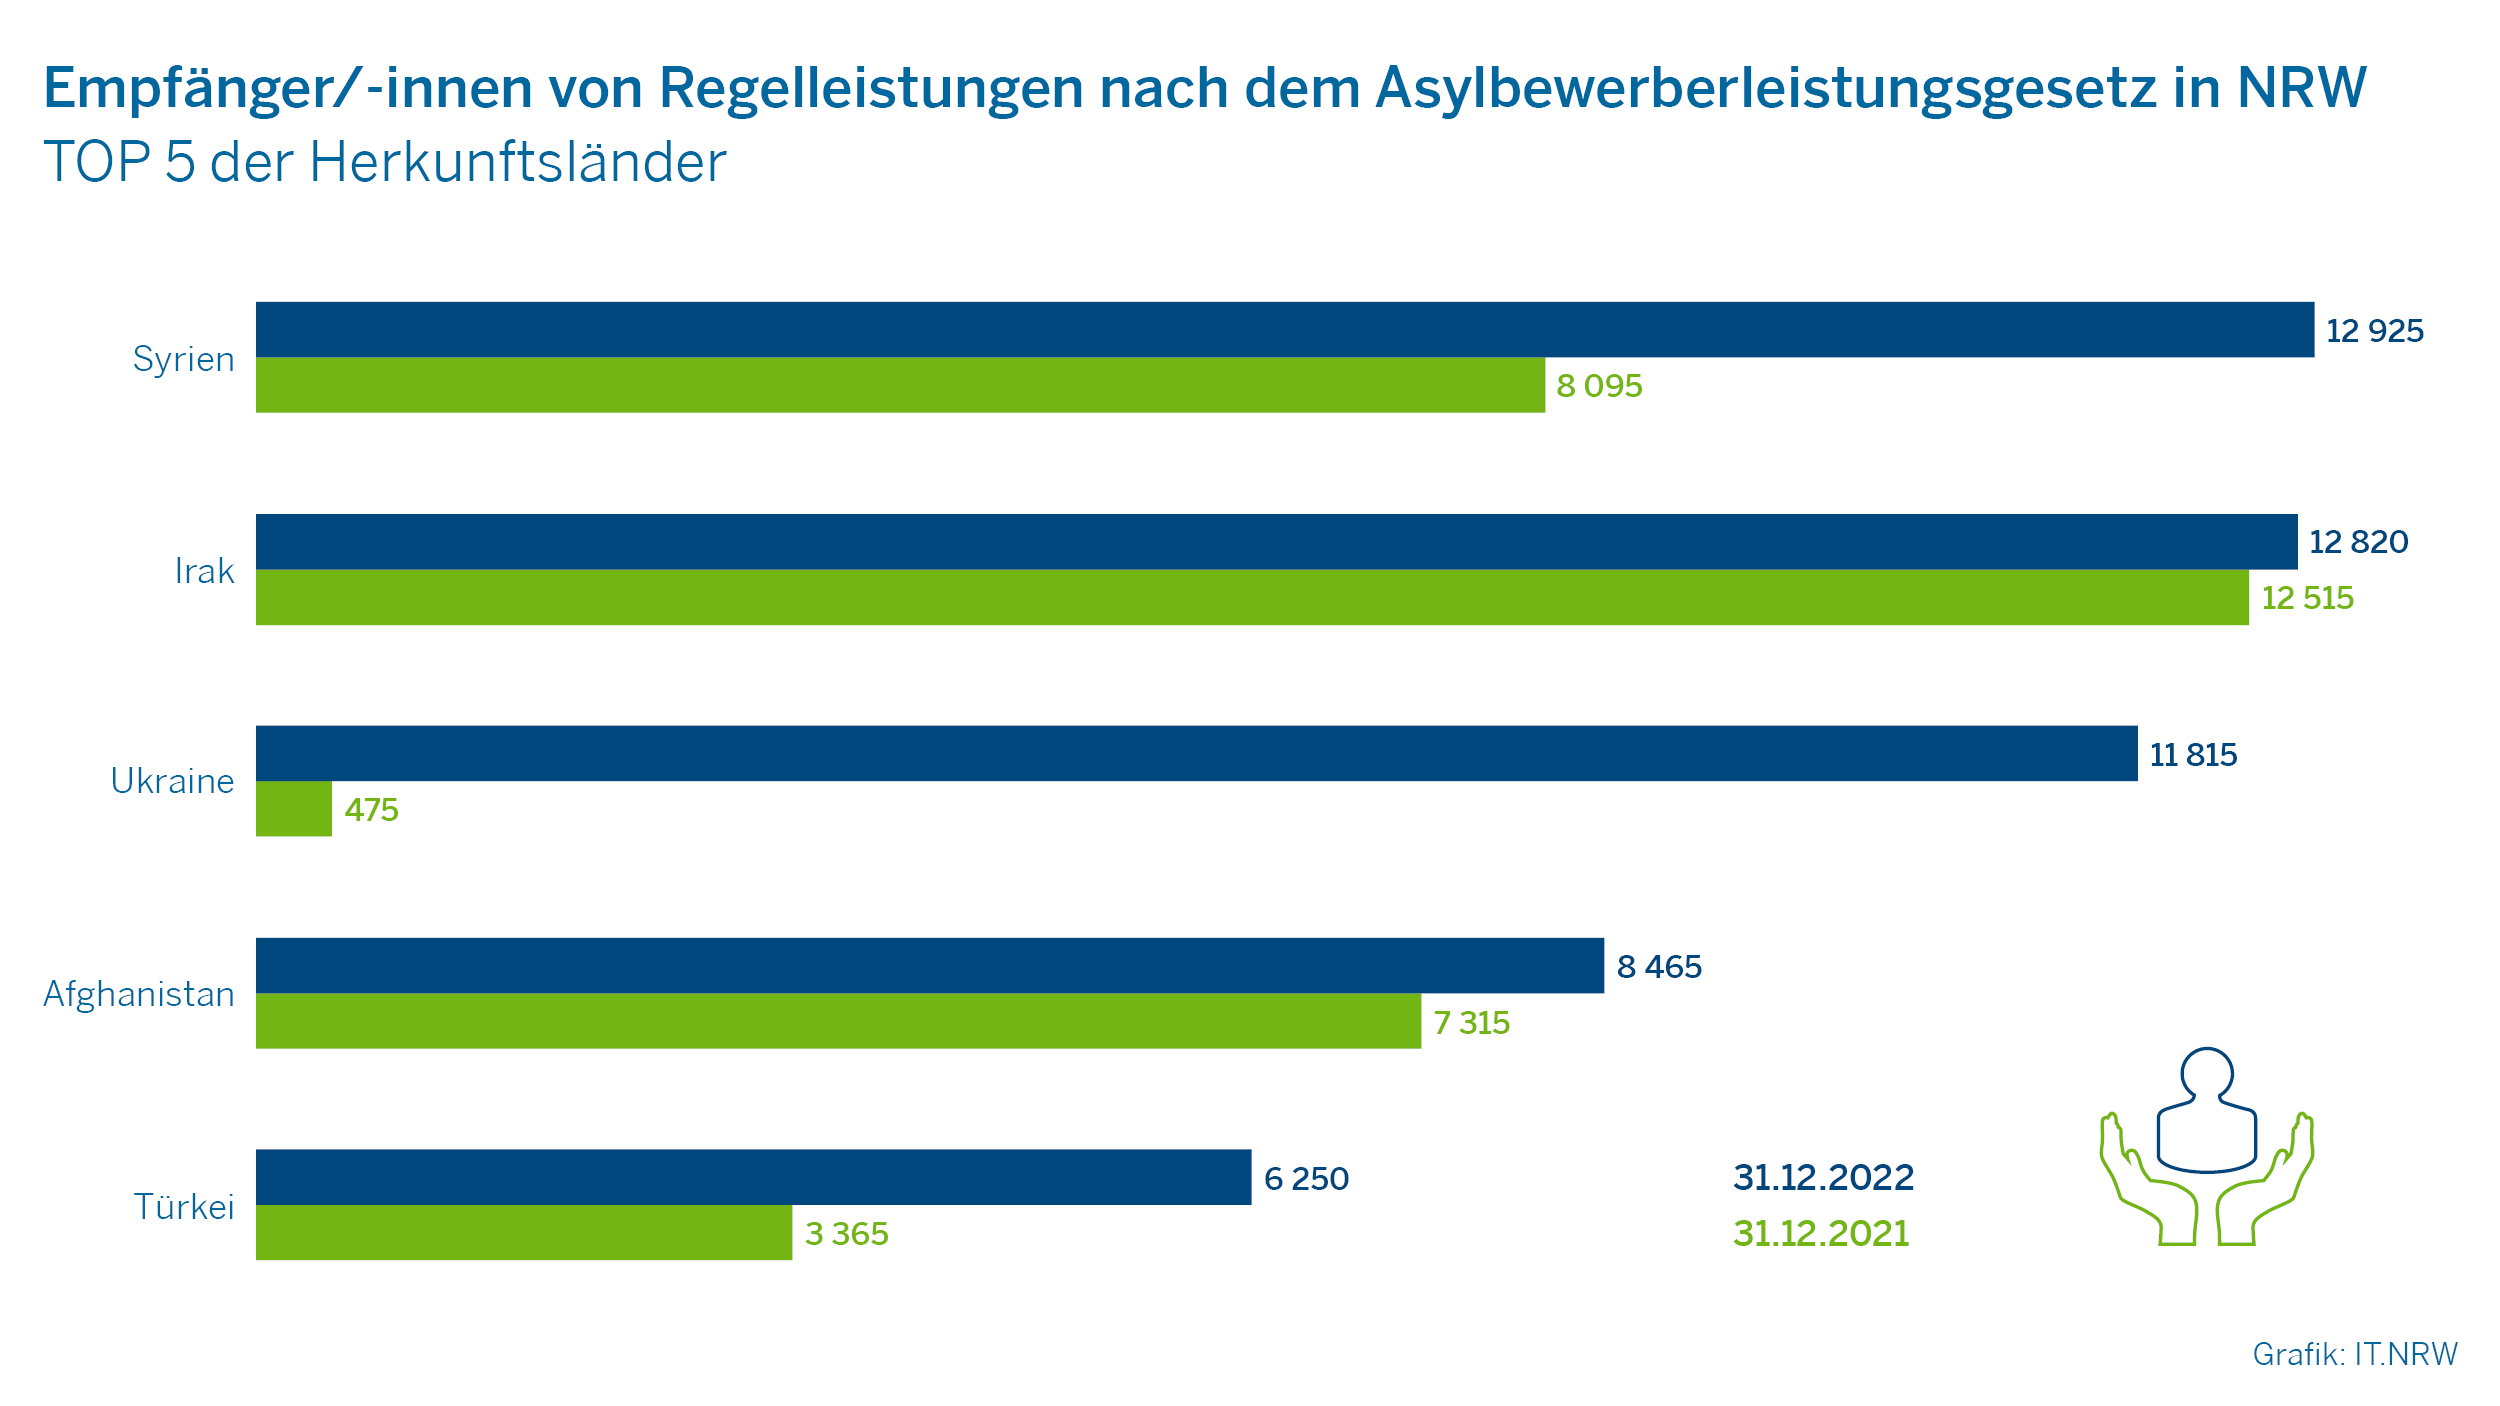 Empfänger/-innen von Regelleistungen nach dem Asylbewerberleistungsgesetz in NRW